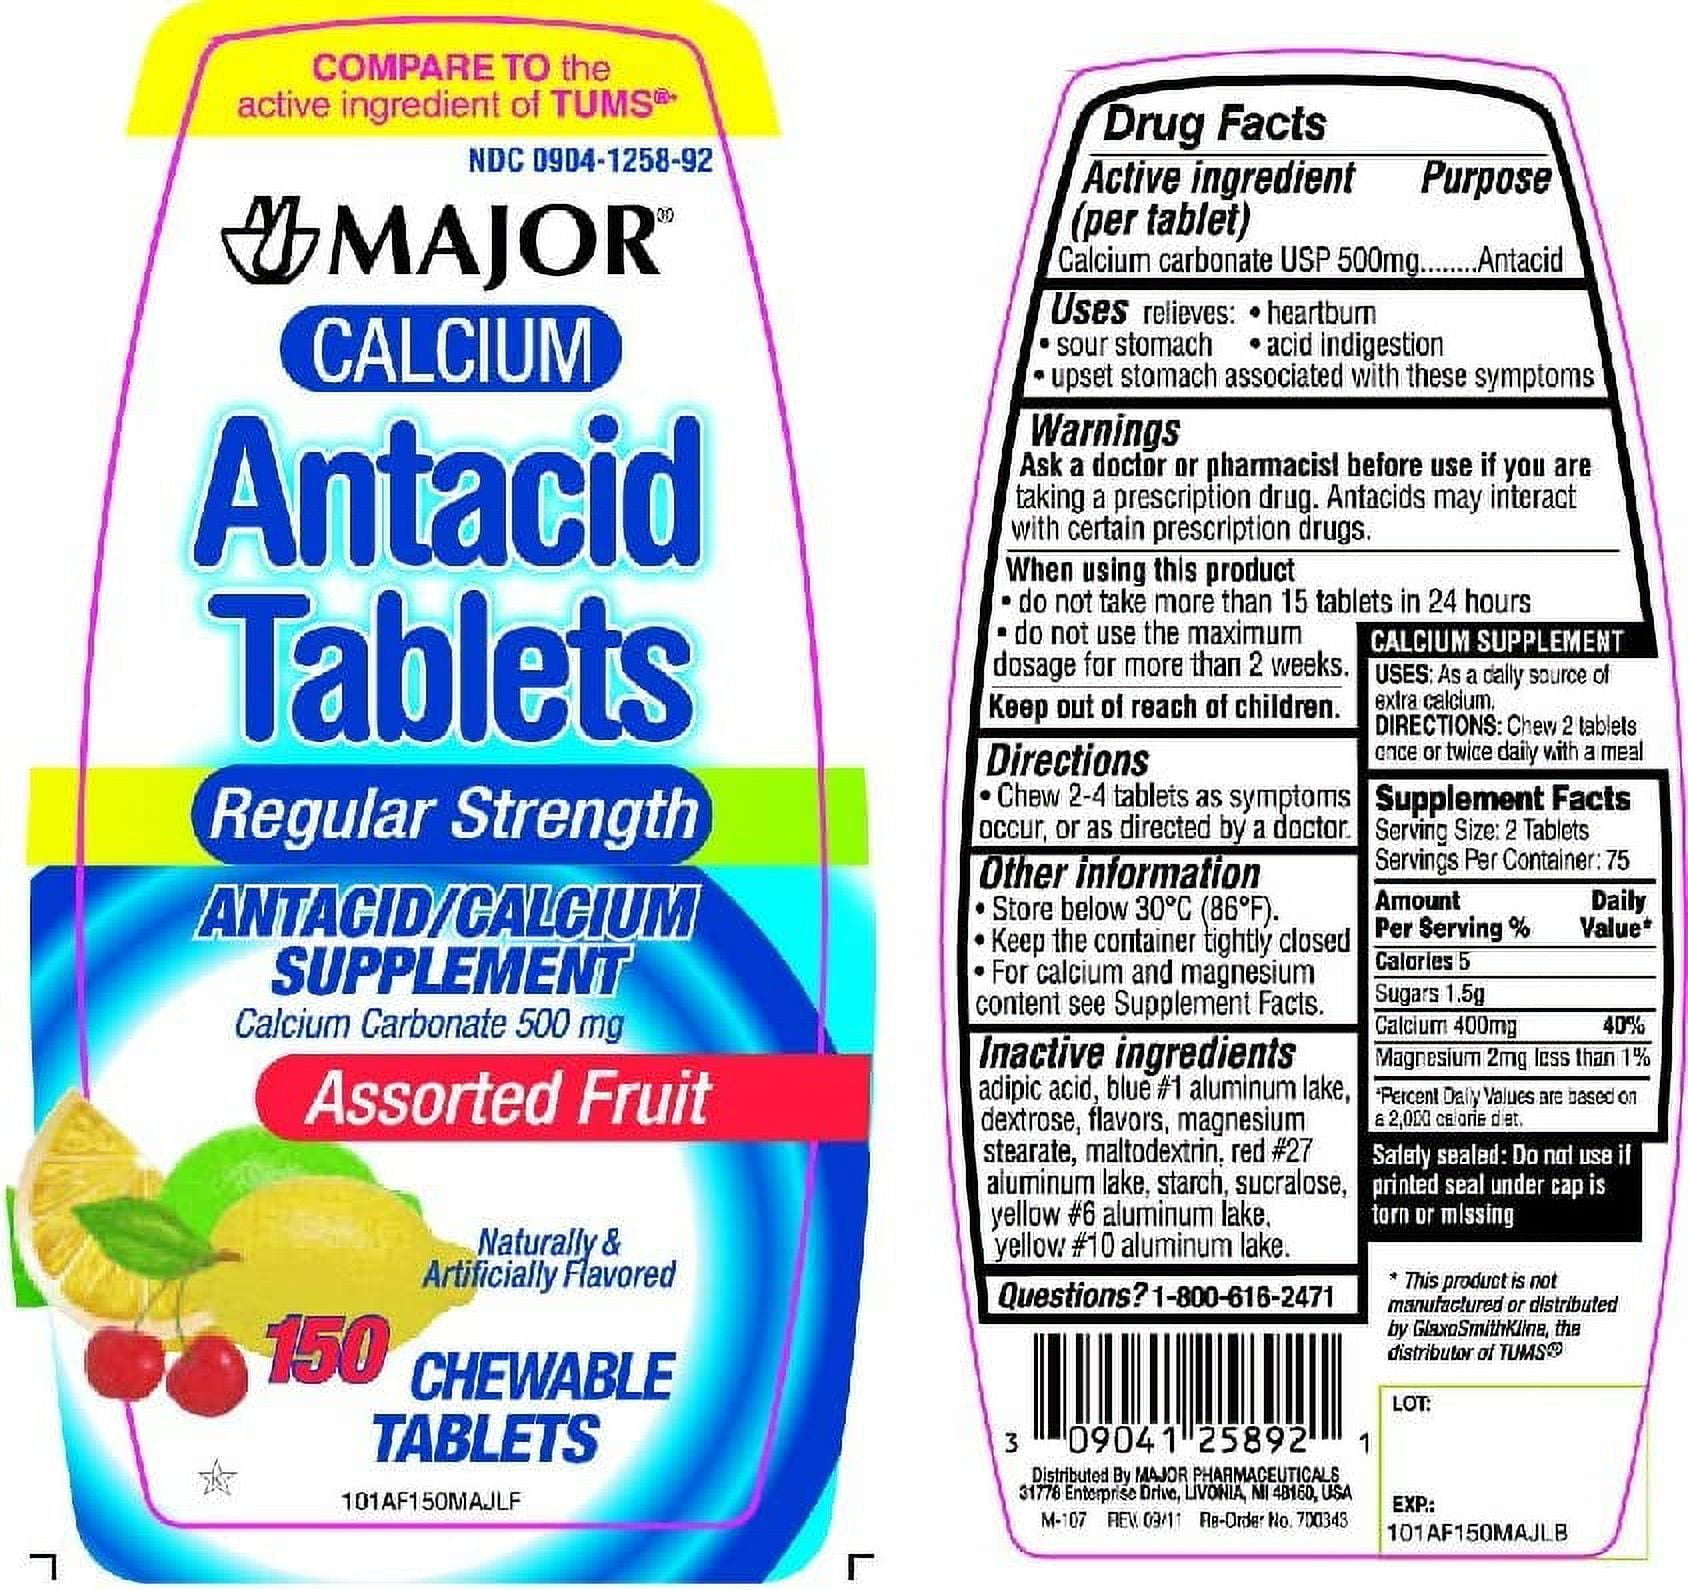 Antacid Tablets. Antacid Tablets Египет. Кальций фруктовый вкус. Antacid Tablets перевод. Antacid